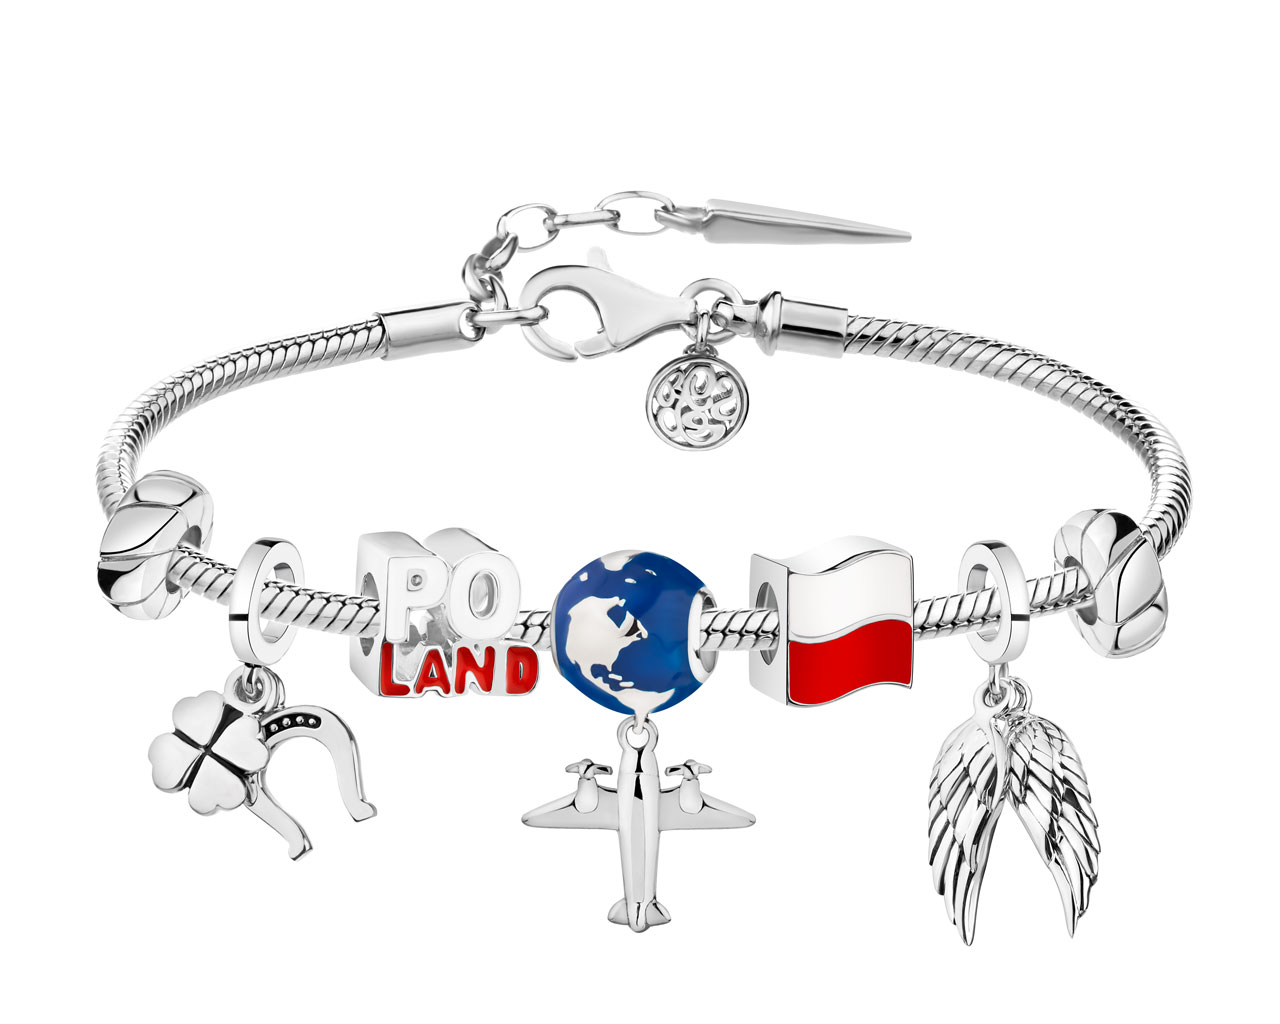 Bransoleta beads zestaw - Polska, flaga, samolot, kula ziemska, koniczyna, podkowa, skrzydła